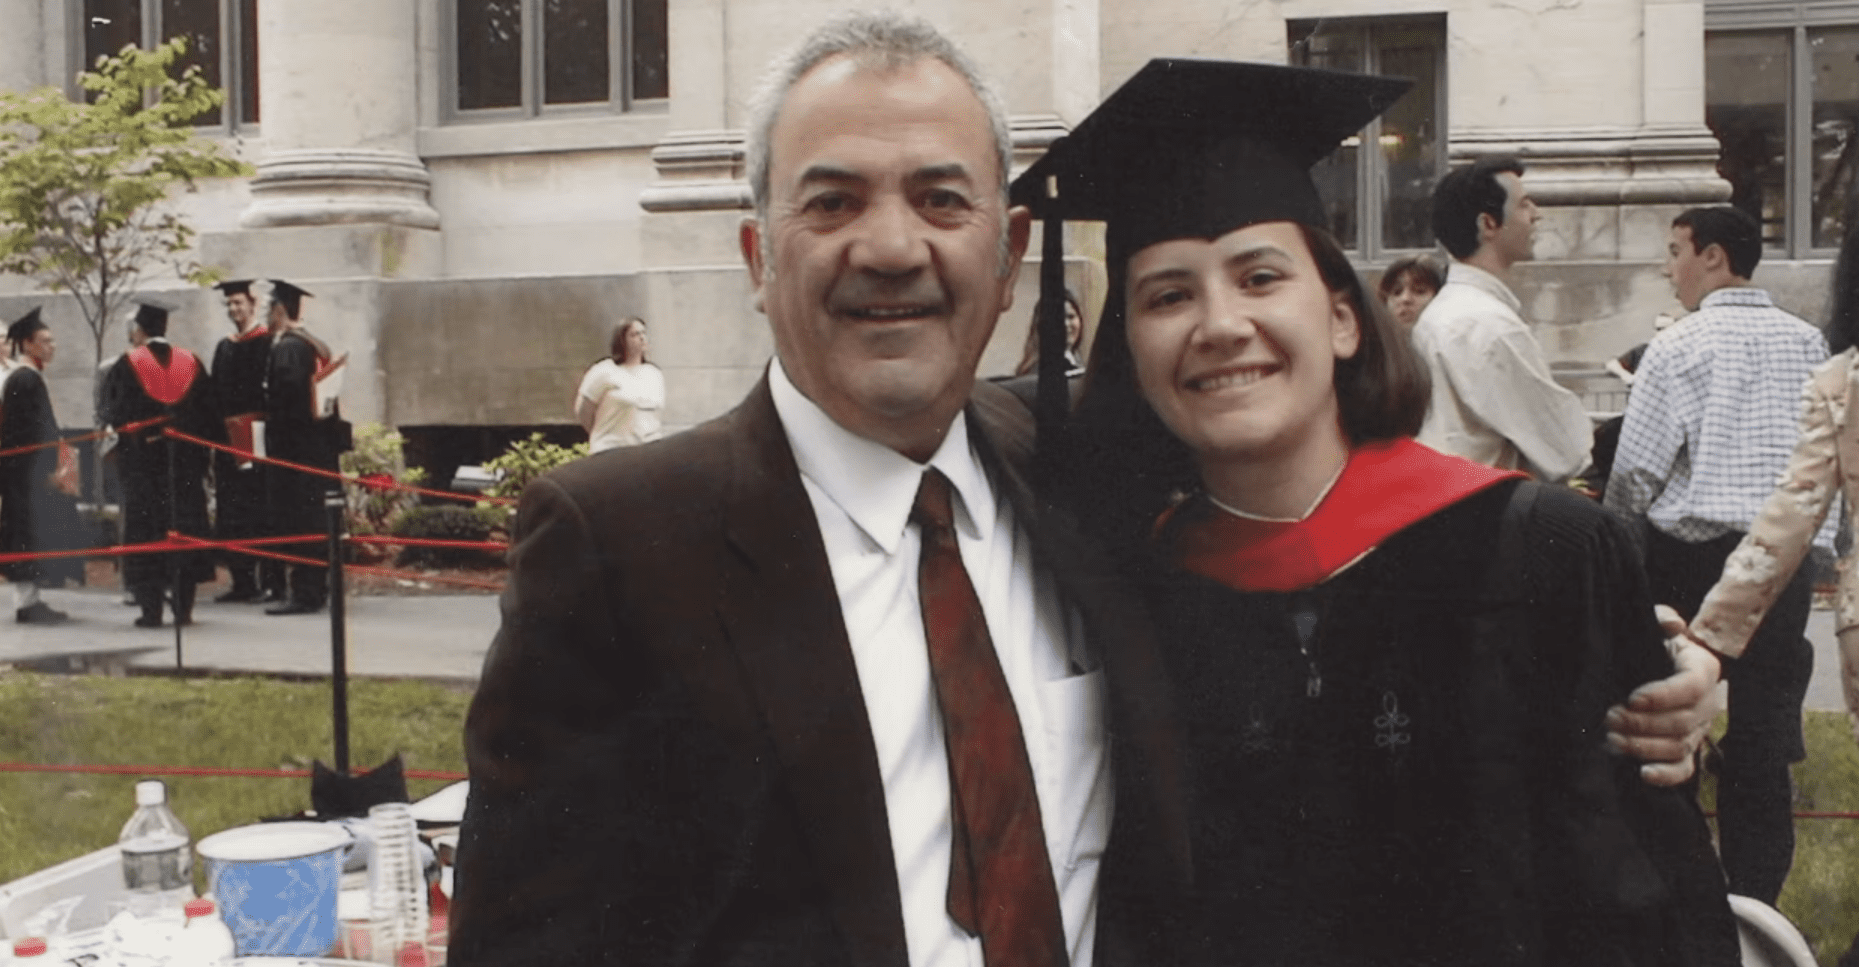 Ana Reyes tras graduarse de Derecho en la Universidad de Harvard. | Foto: YouTube/Kentucky Department of Education